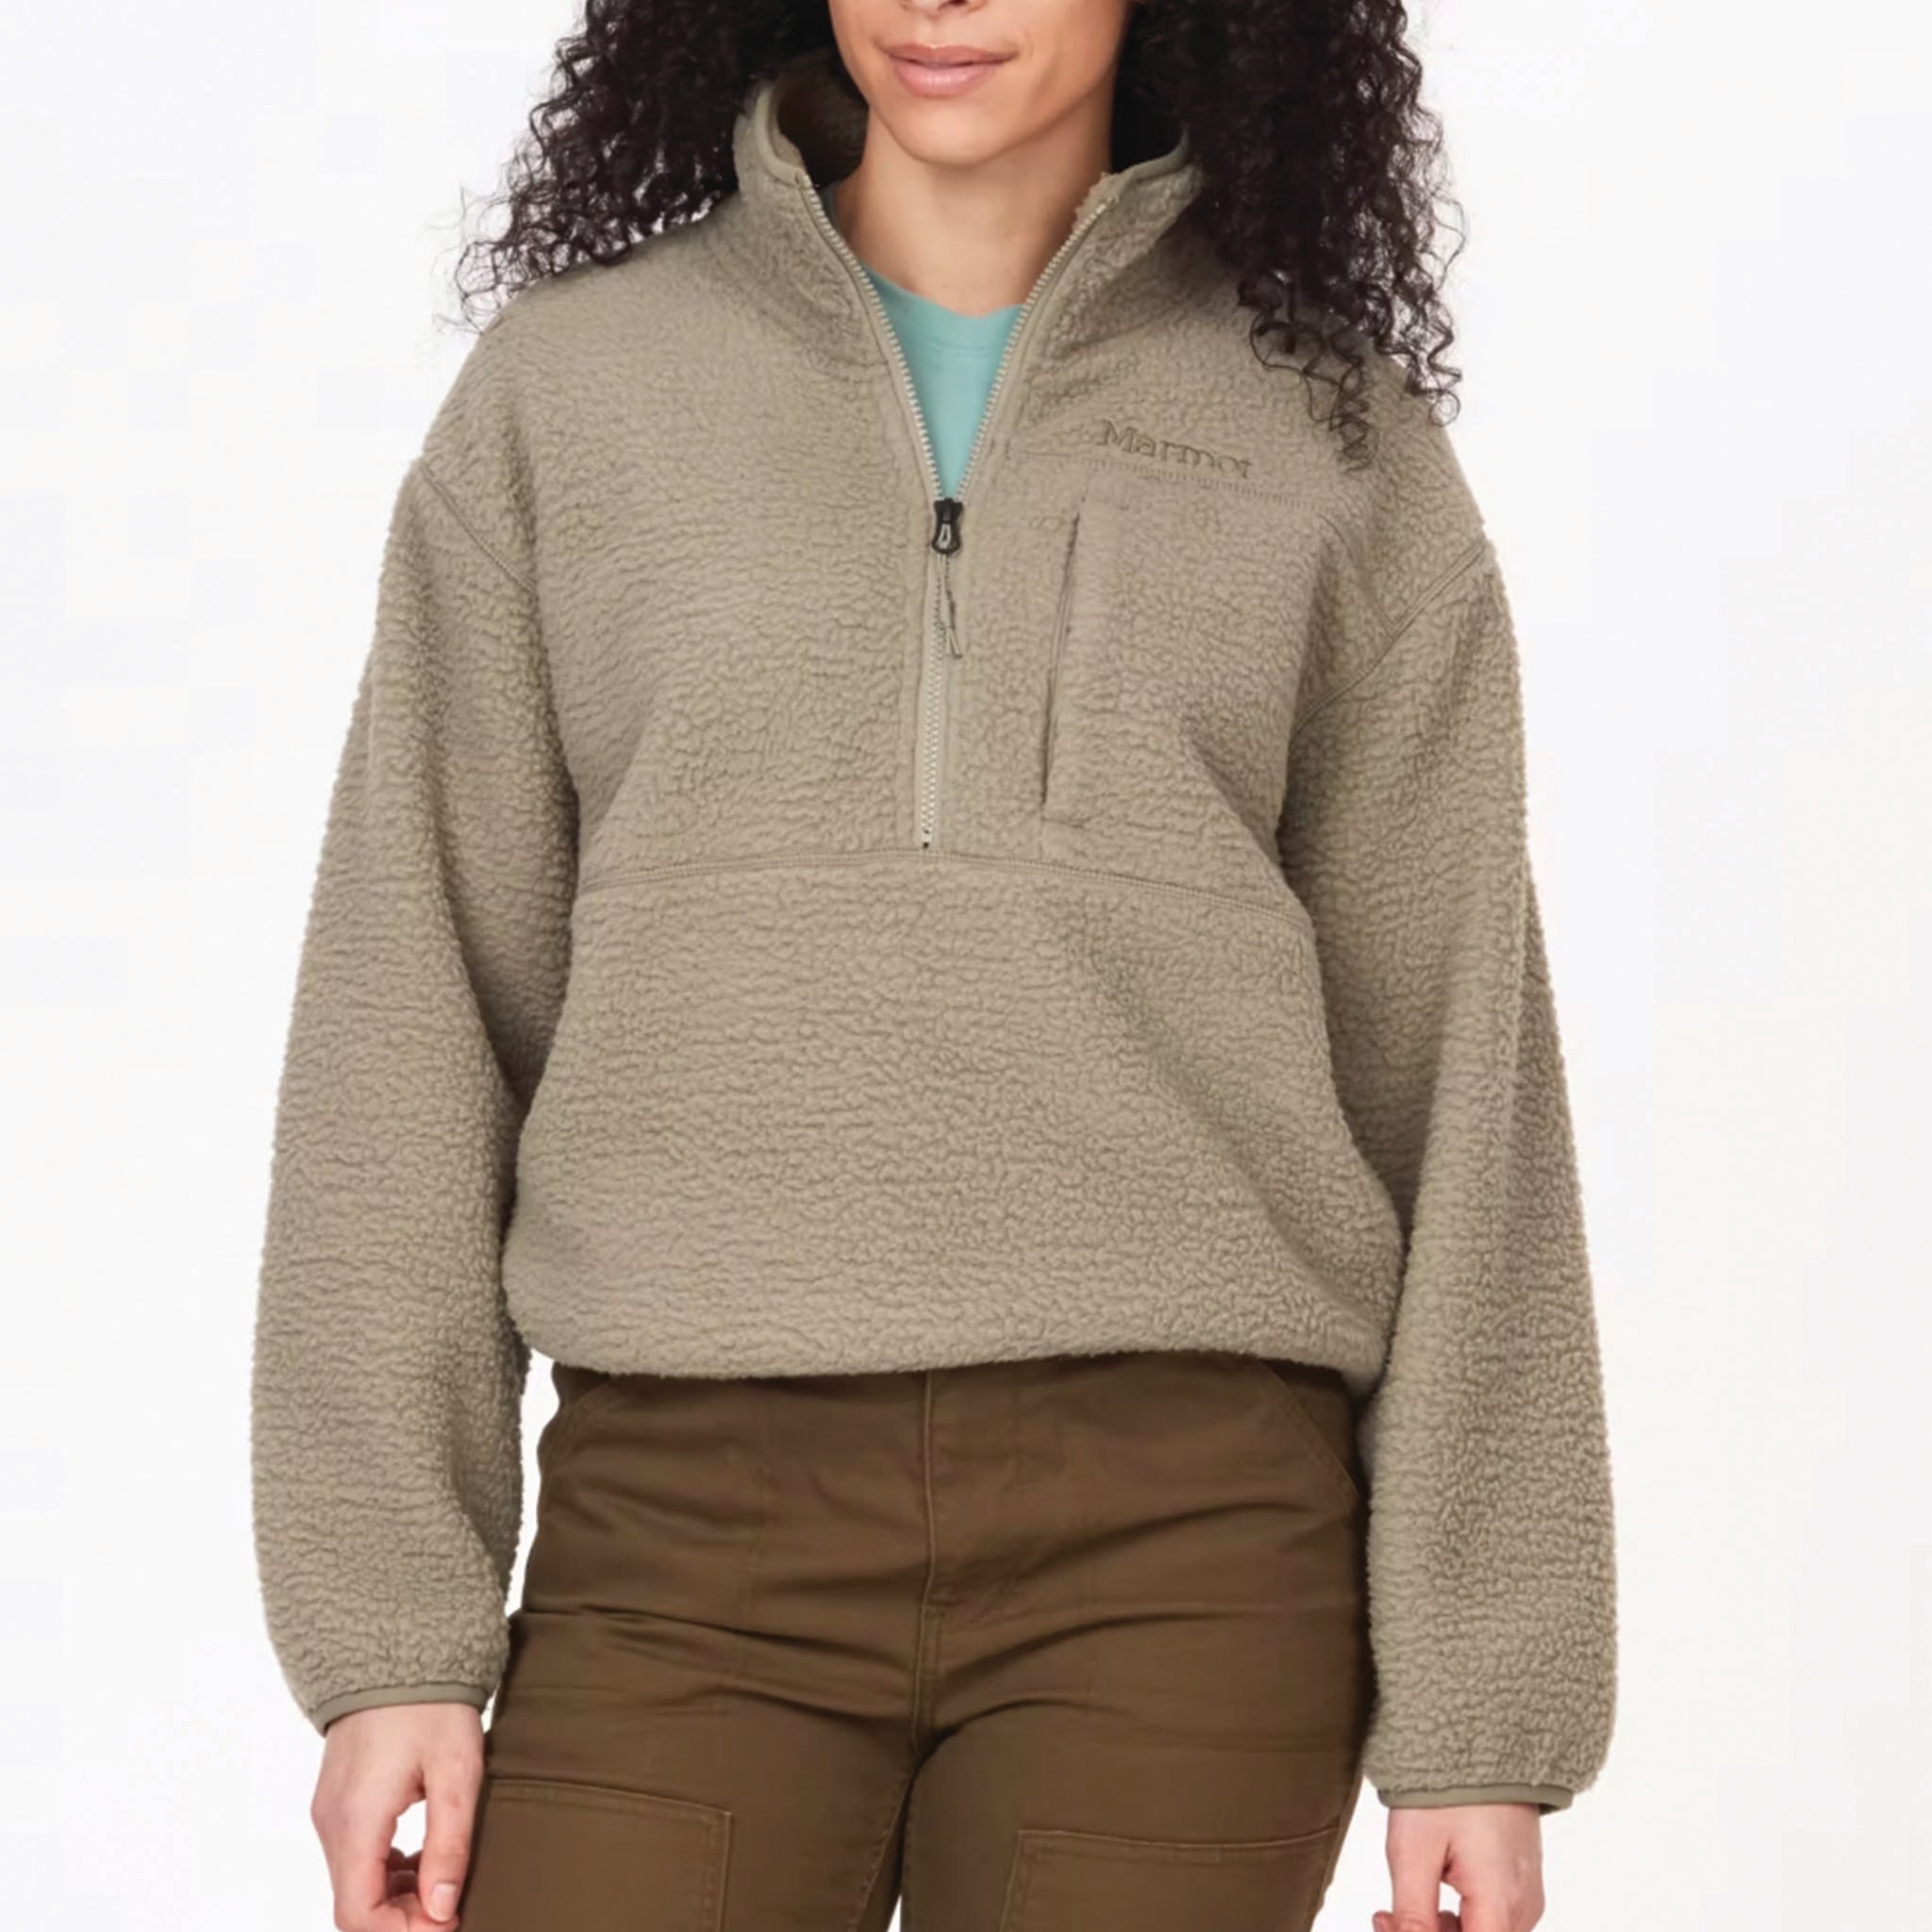 Marmot 1/4 Zip Fleece Jackets for Women